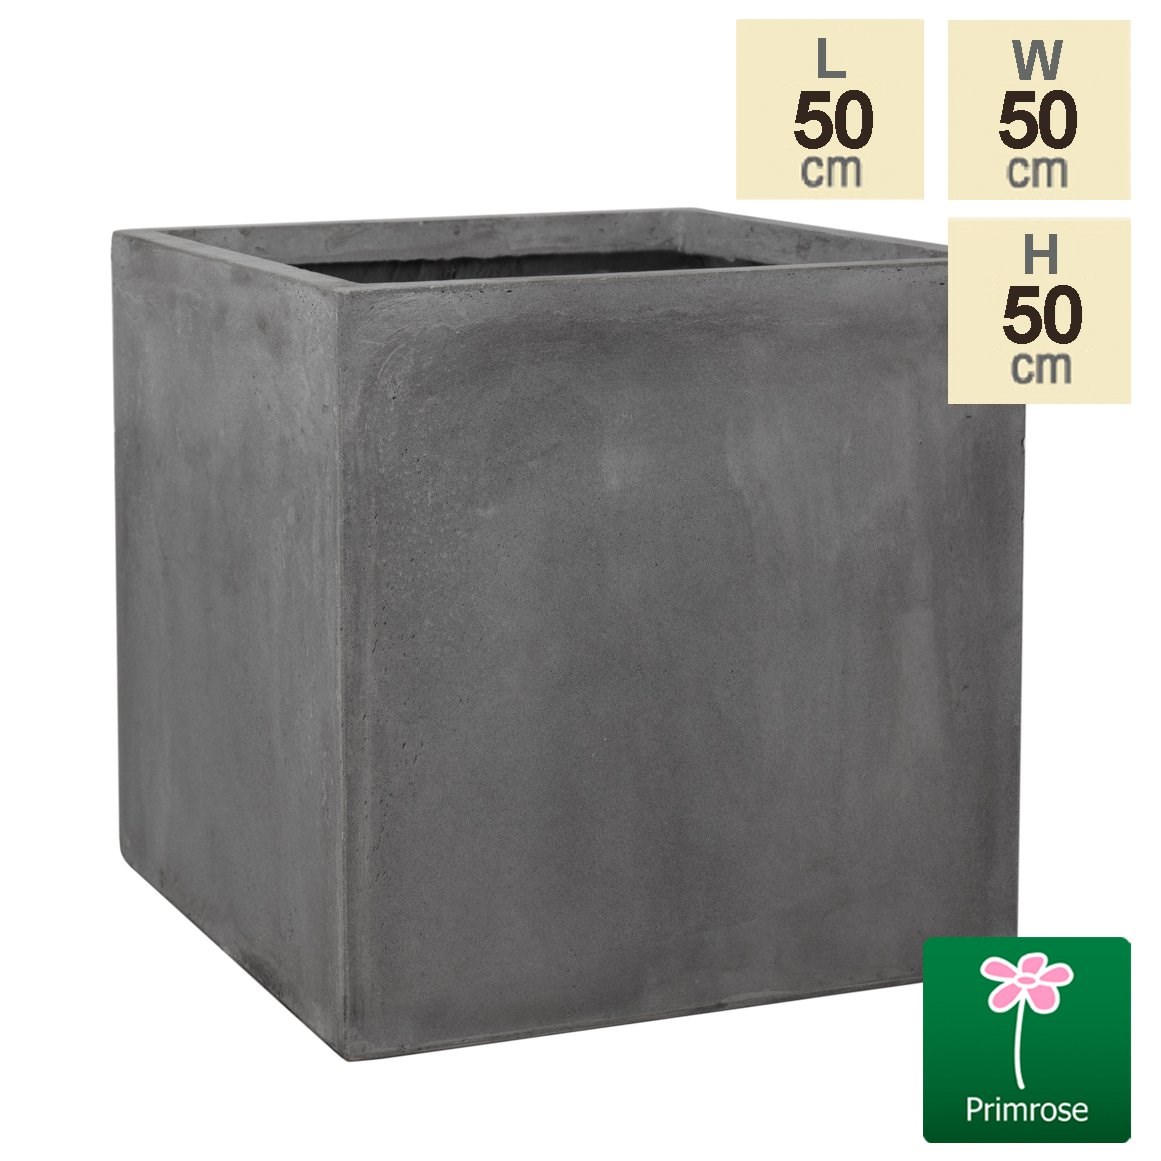 50cm Fibrecotta XL Cement Finish Cube Planter